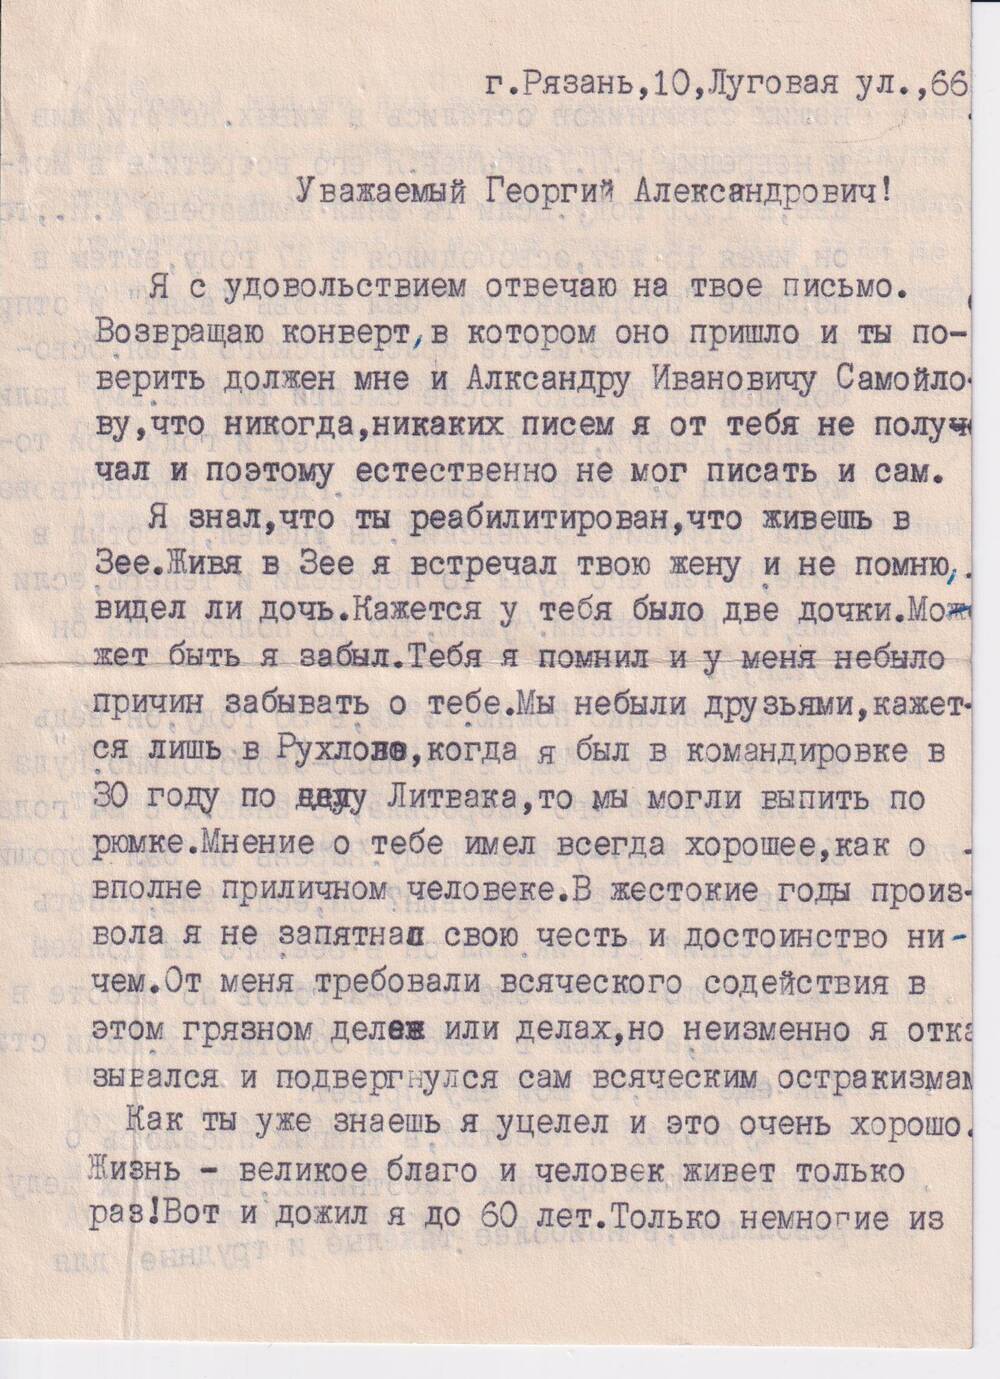 Письмо Конзе Георгию Александровичу от Постнова В.И. - соратника  по совместной работе  в ОГПУ в 30-х годах.